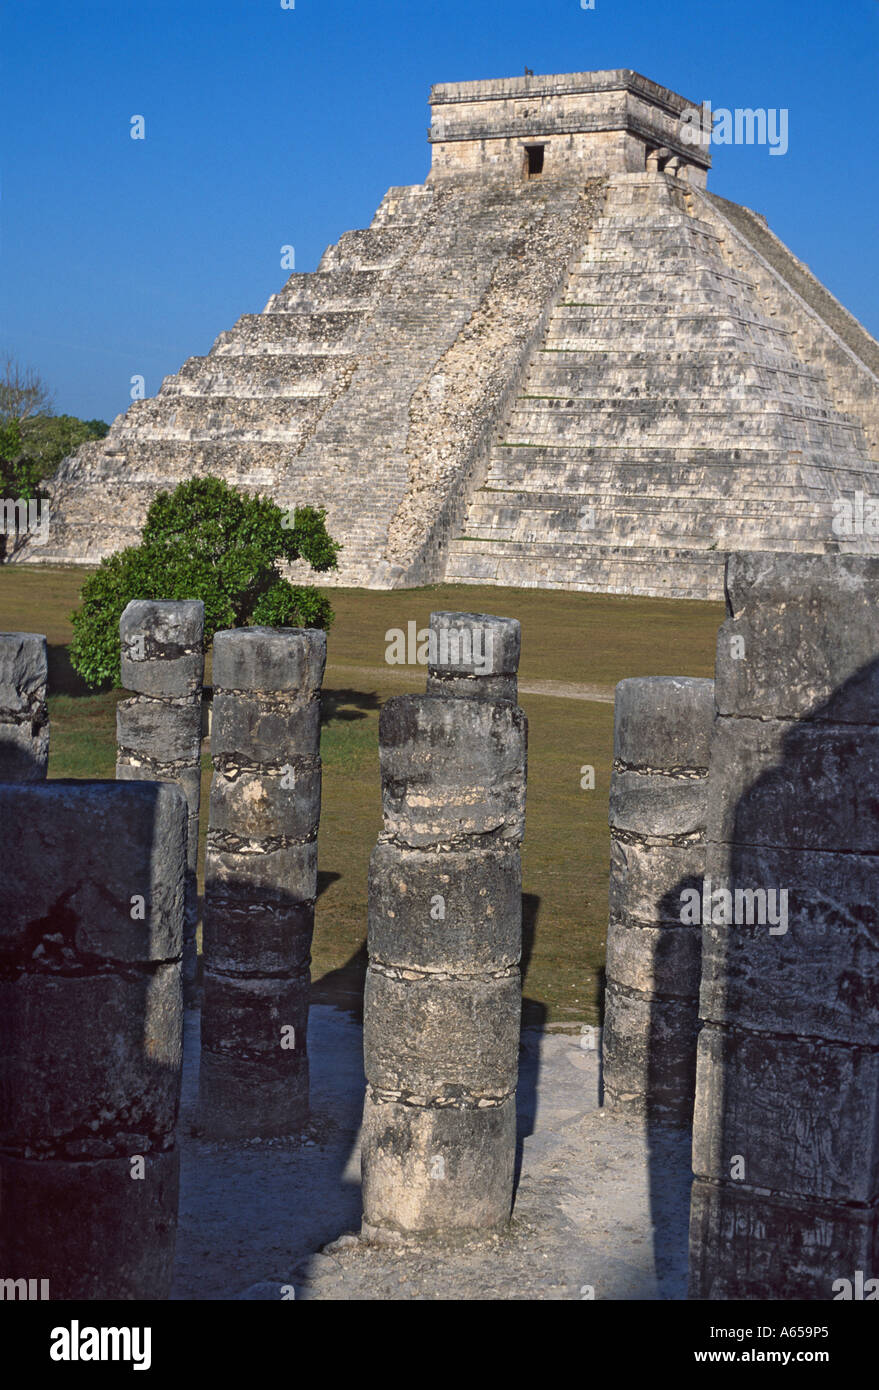 El Castillo, pyramide de Kukulcan temple maya à Chichen Itza, Yucatan, Mexique Banque D'Images